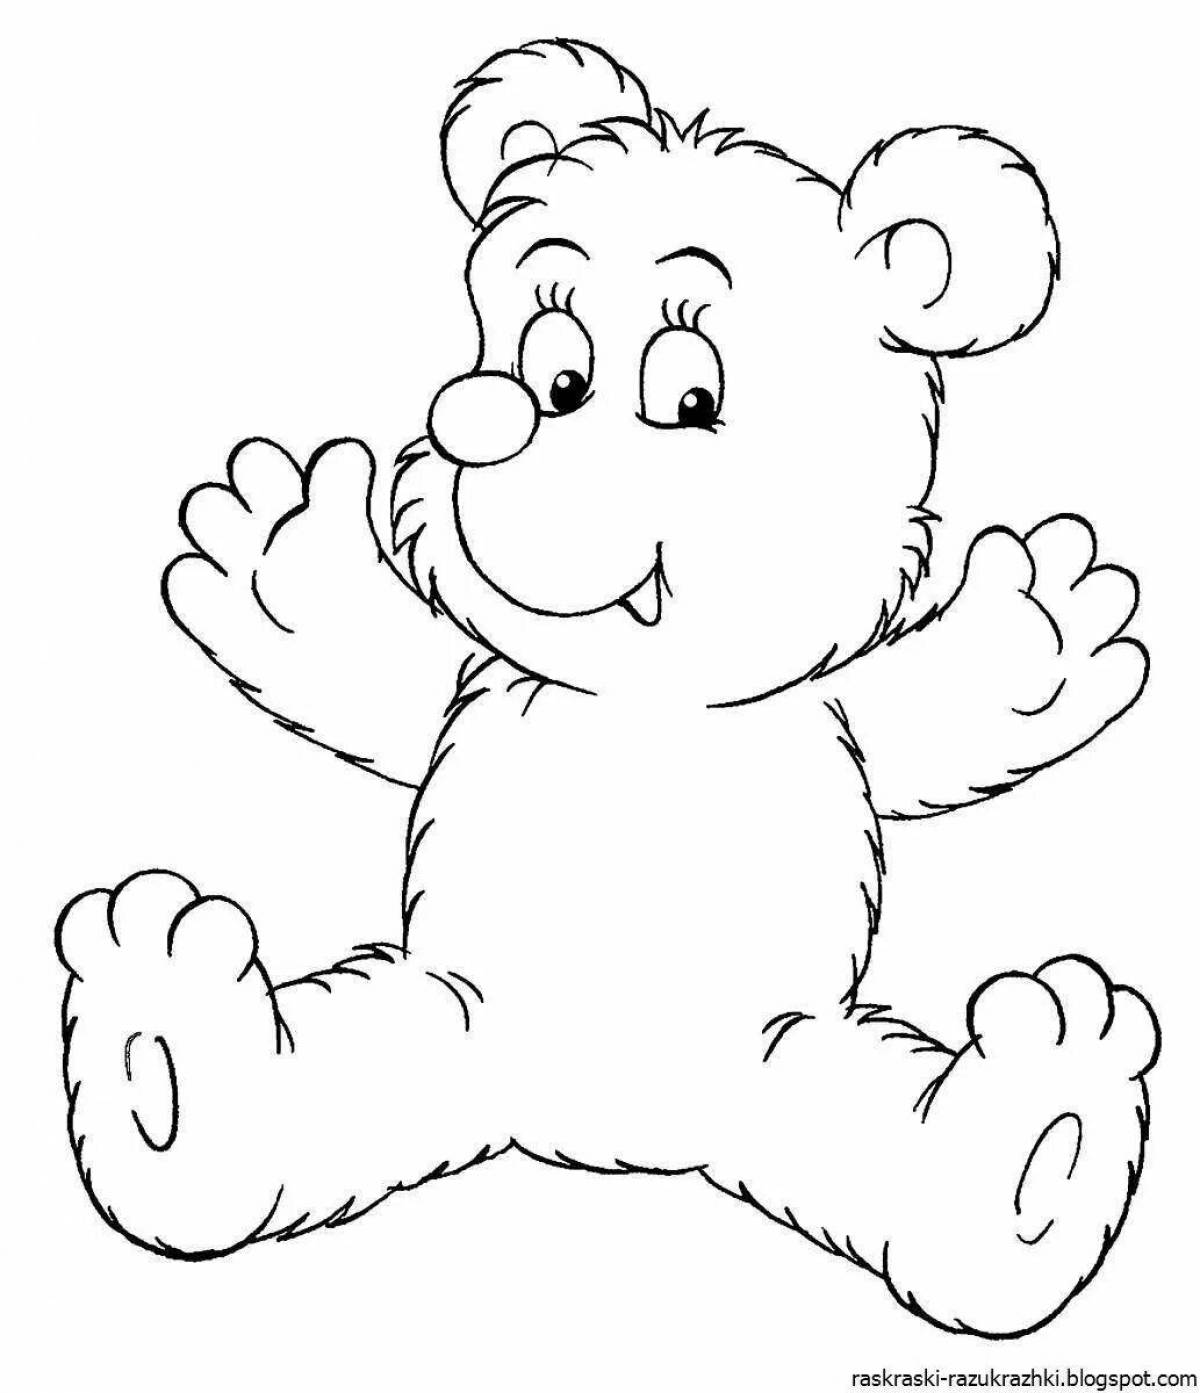 Анимированная раскраска медведя для детей 2-3 лет